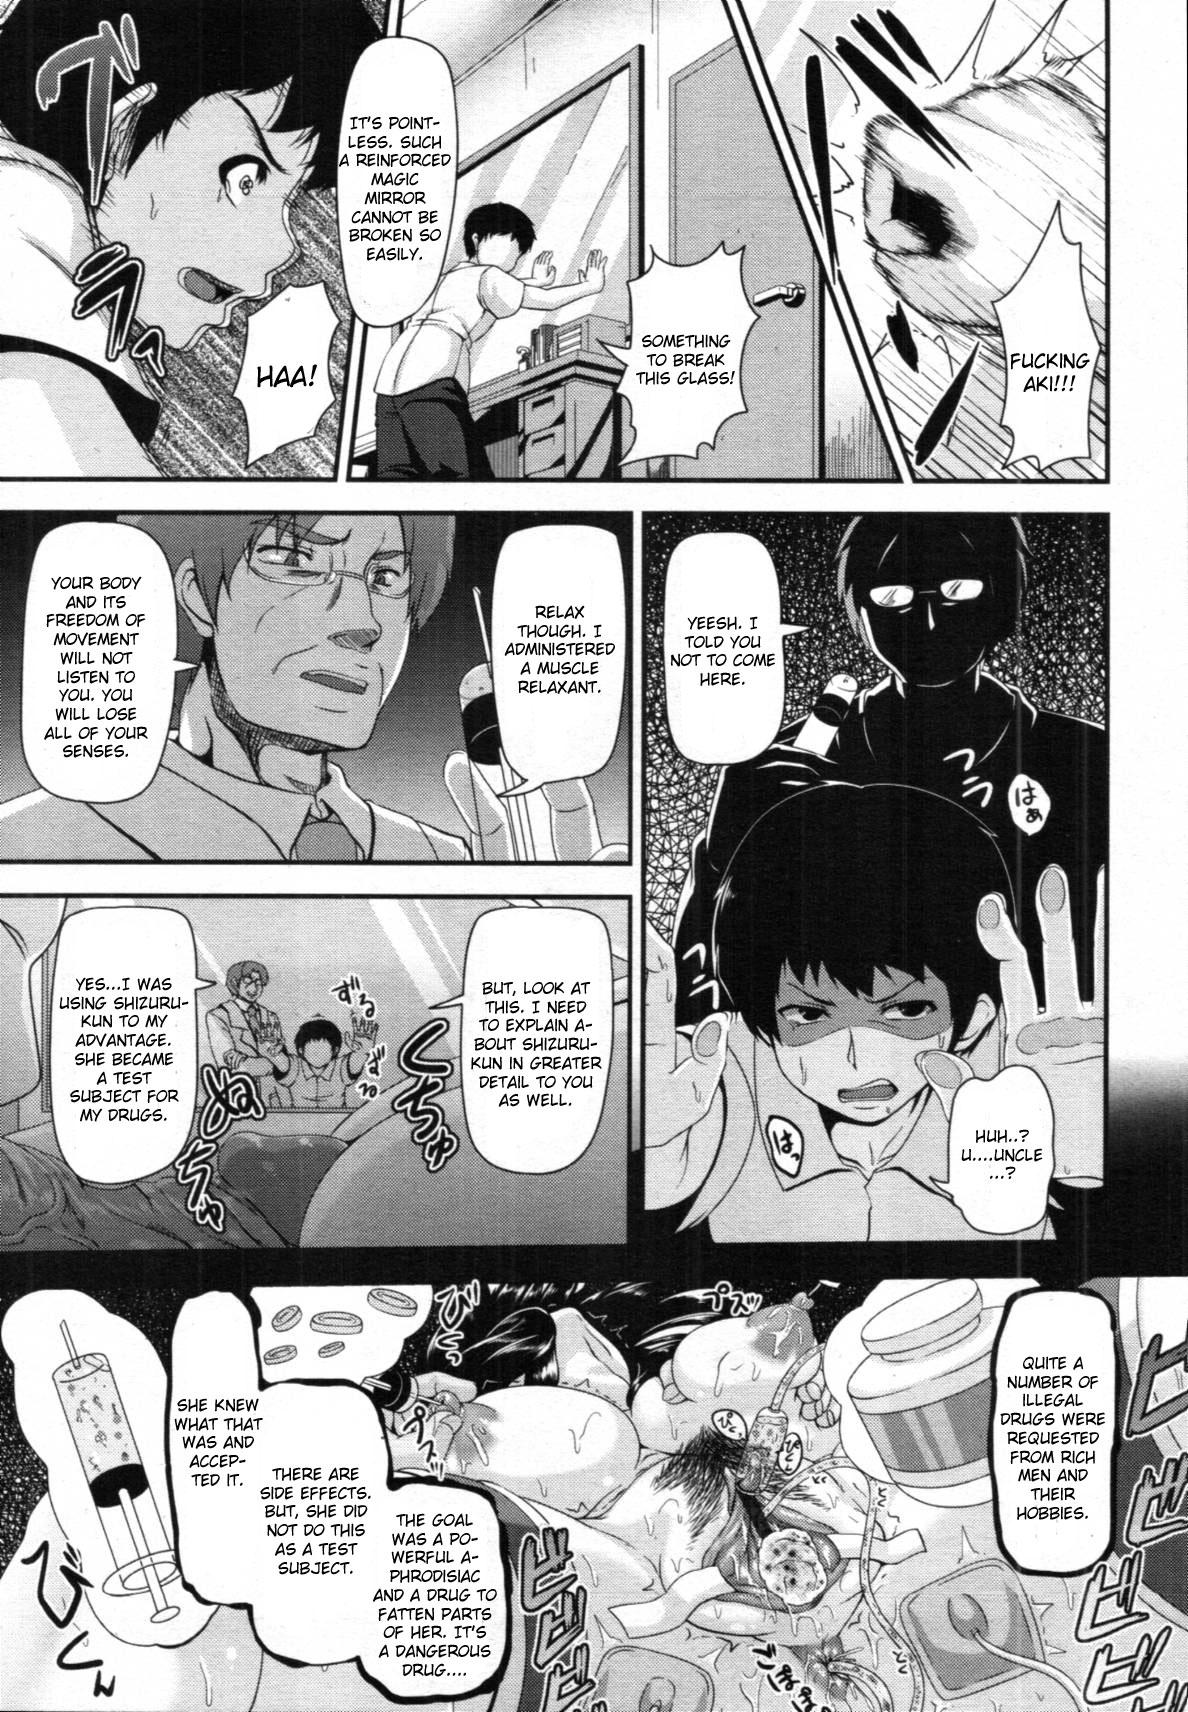 She Kyoudai no Naka Ass Licking - Page 11